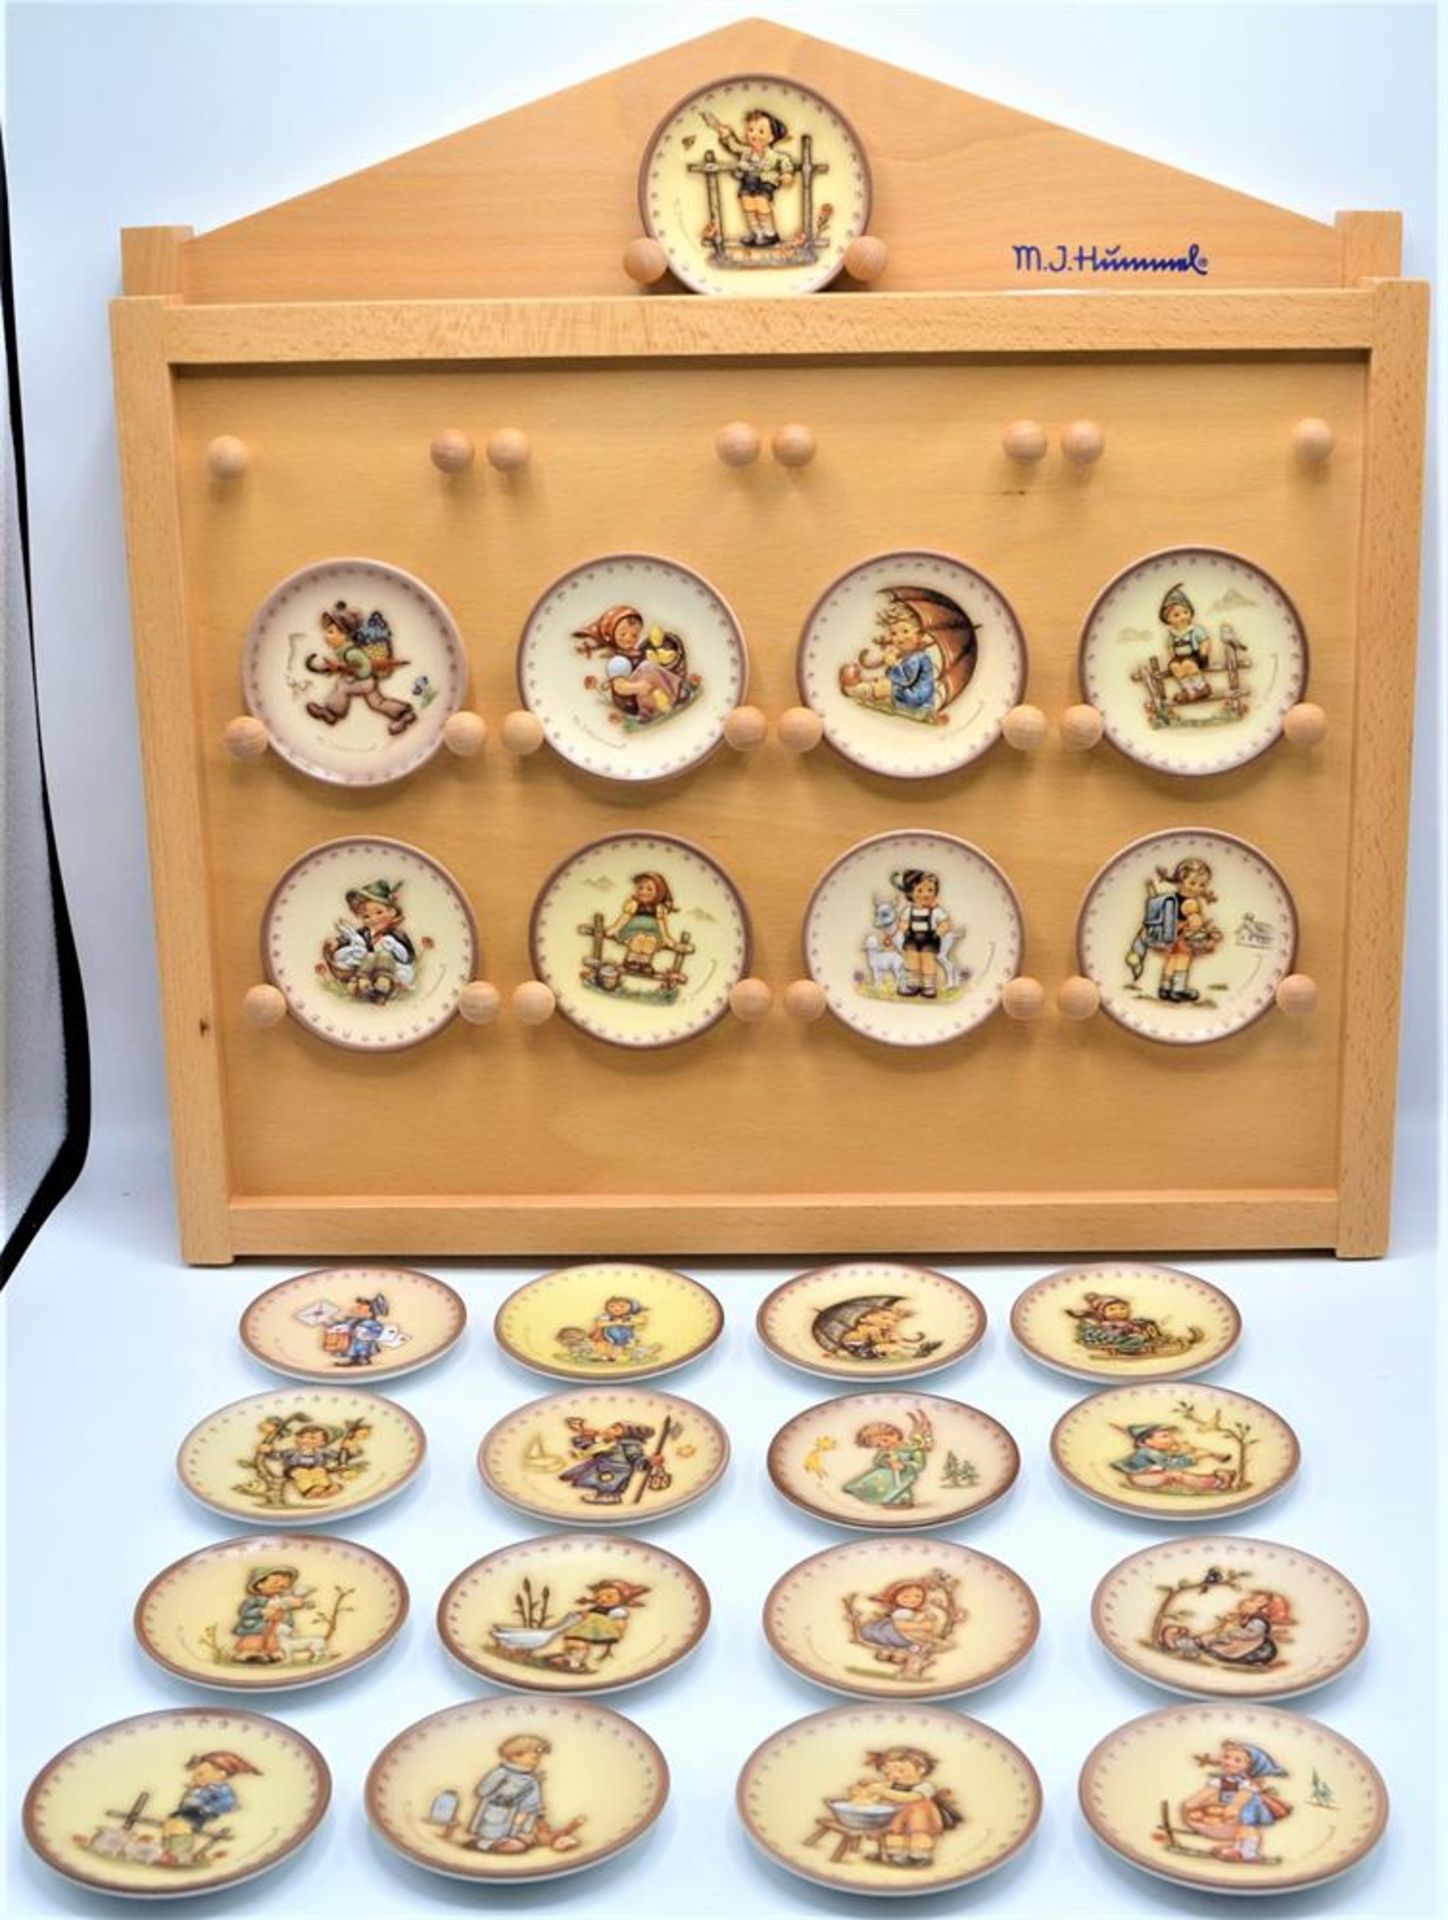 Hummel Göbel Sammelteller Miniteller 25 Stück in Holz Wandregal